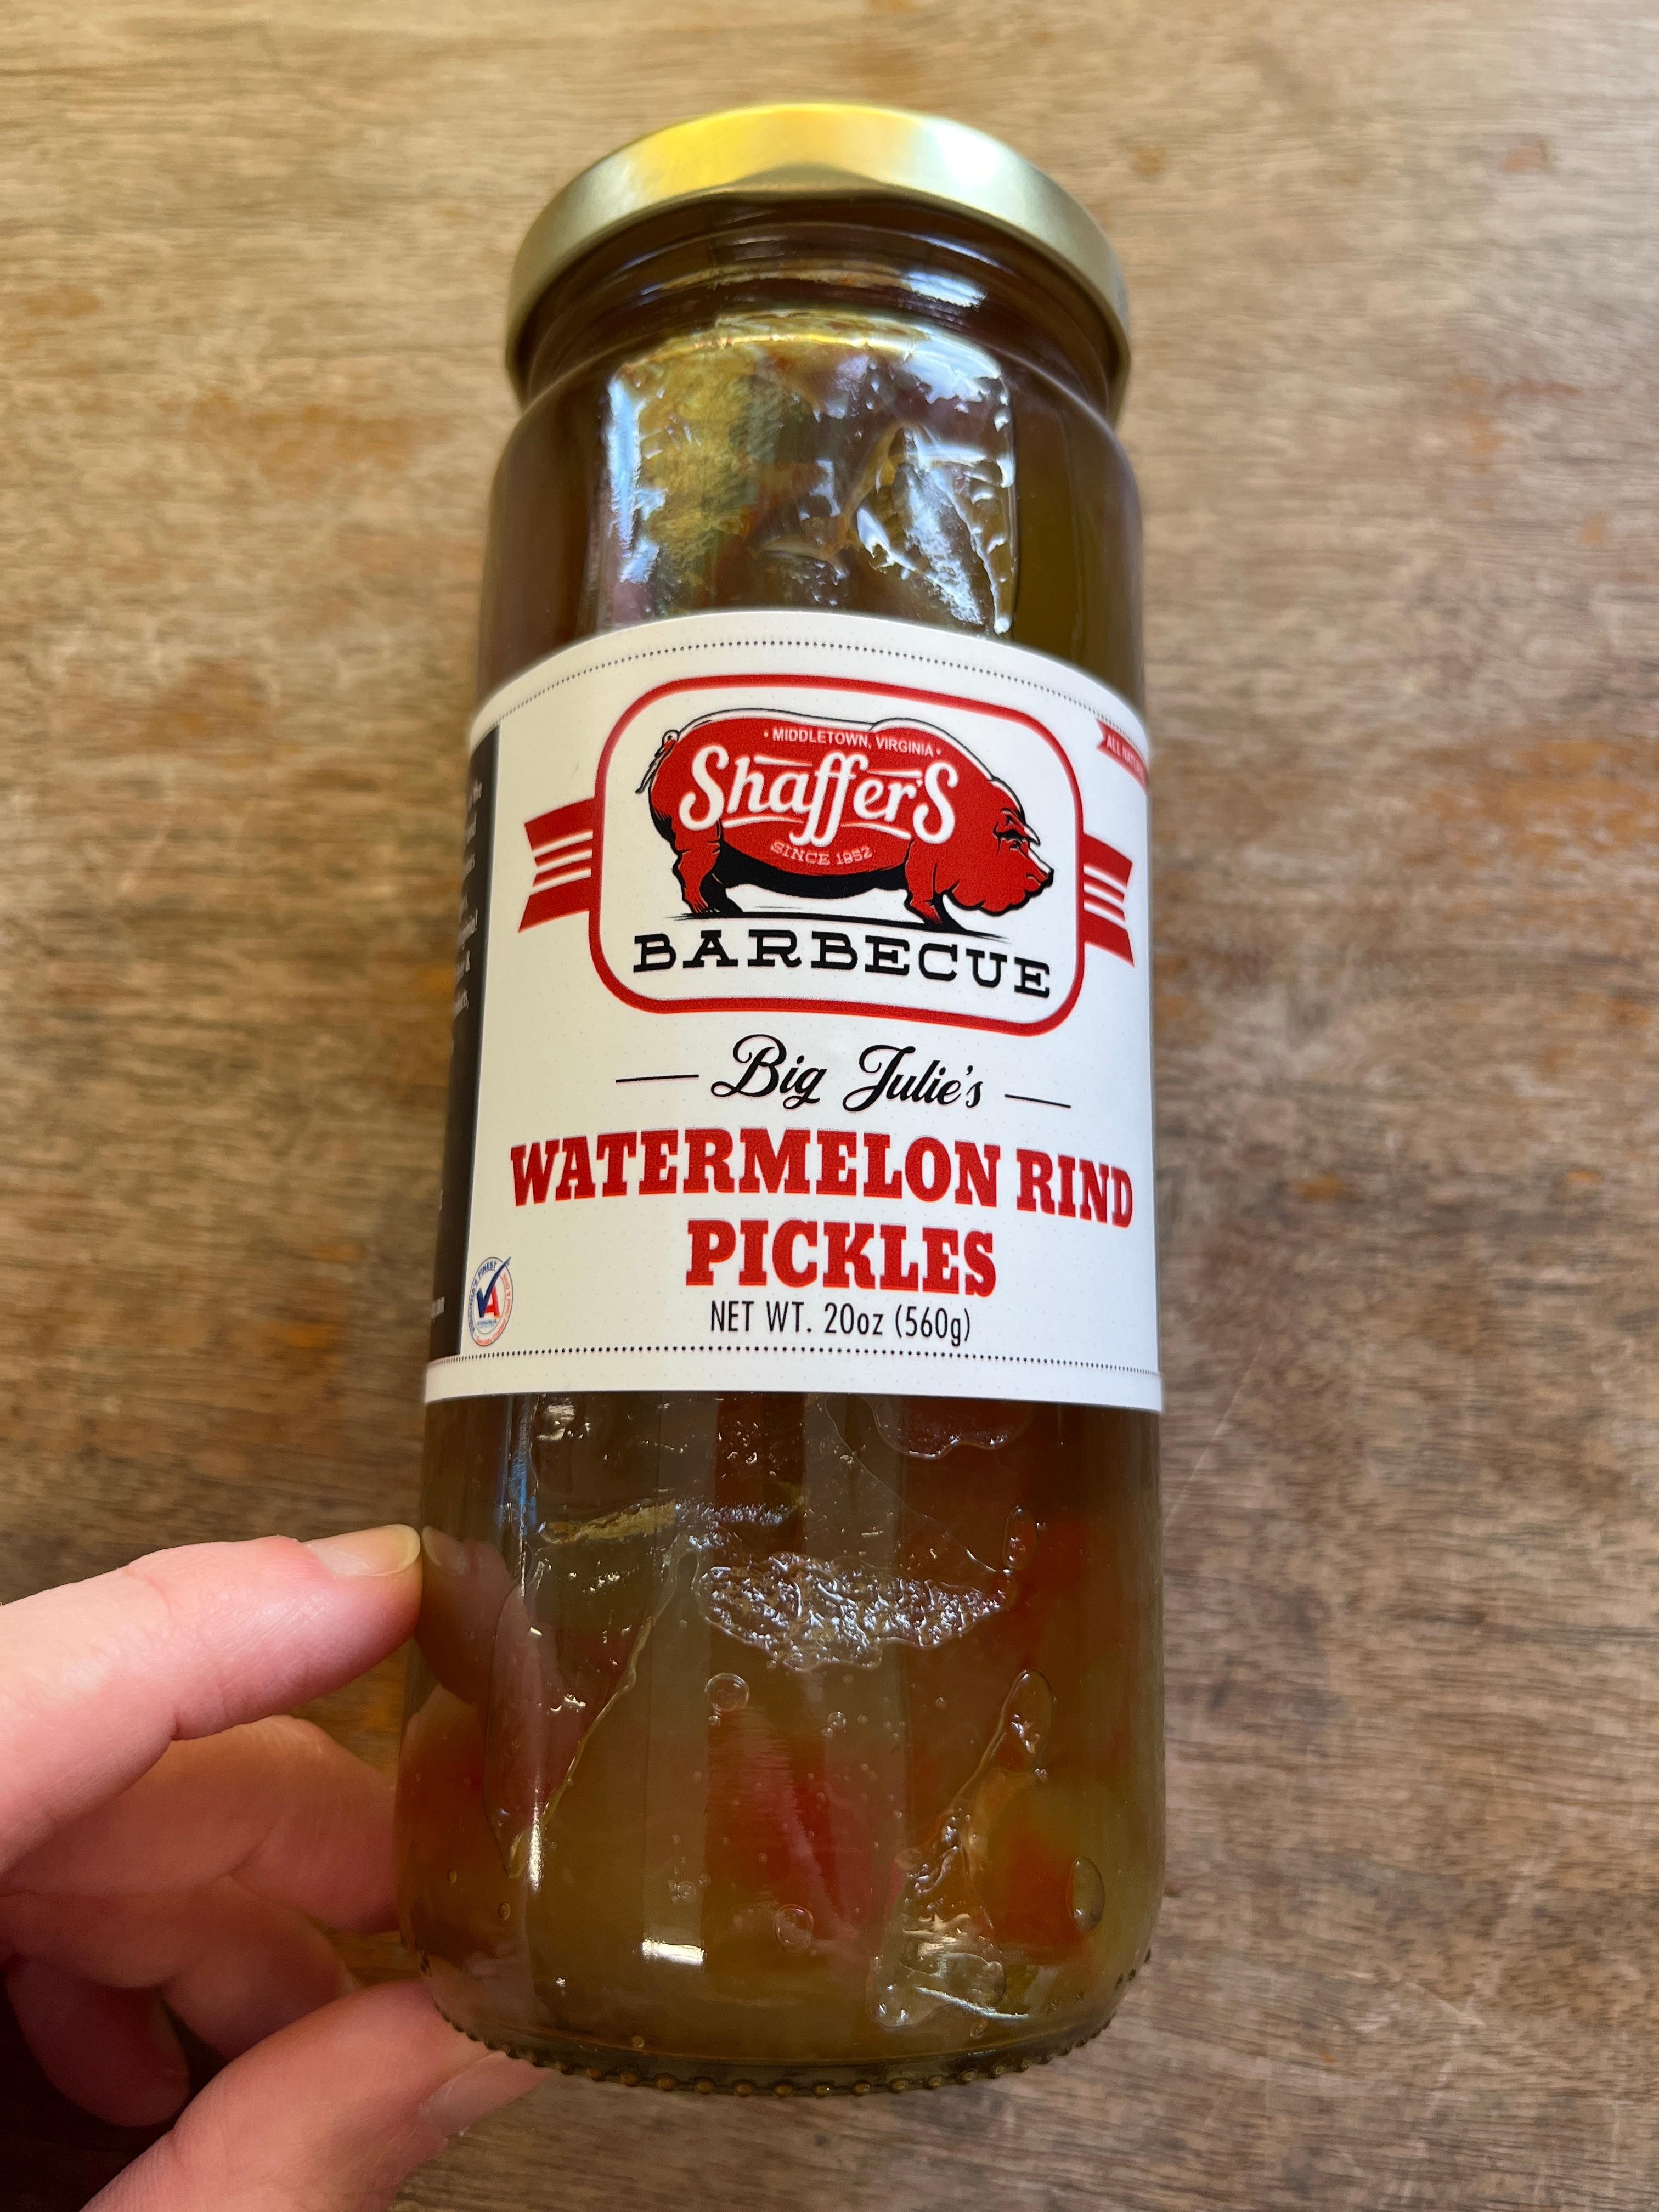 Big Julie's Watermelon Rind Pickles